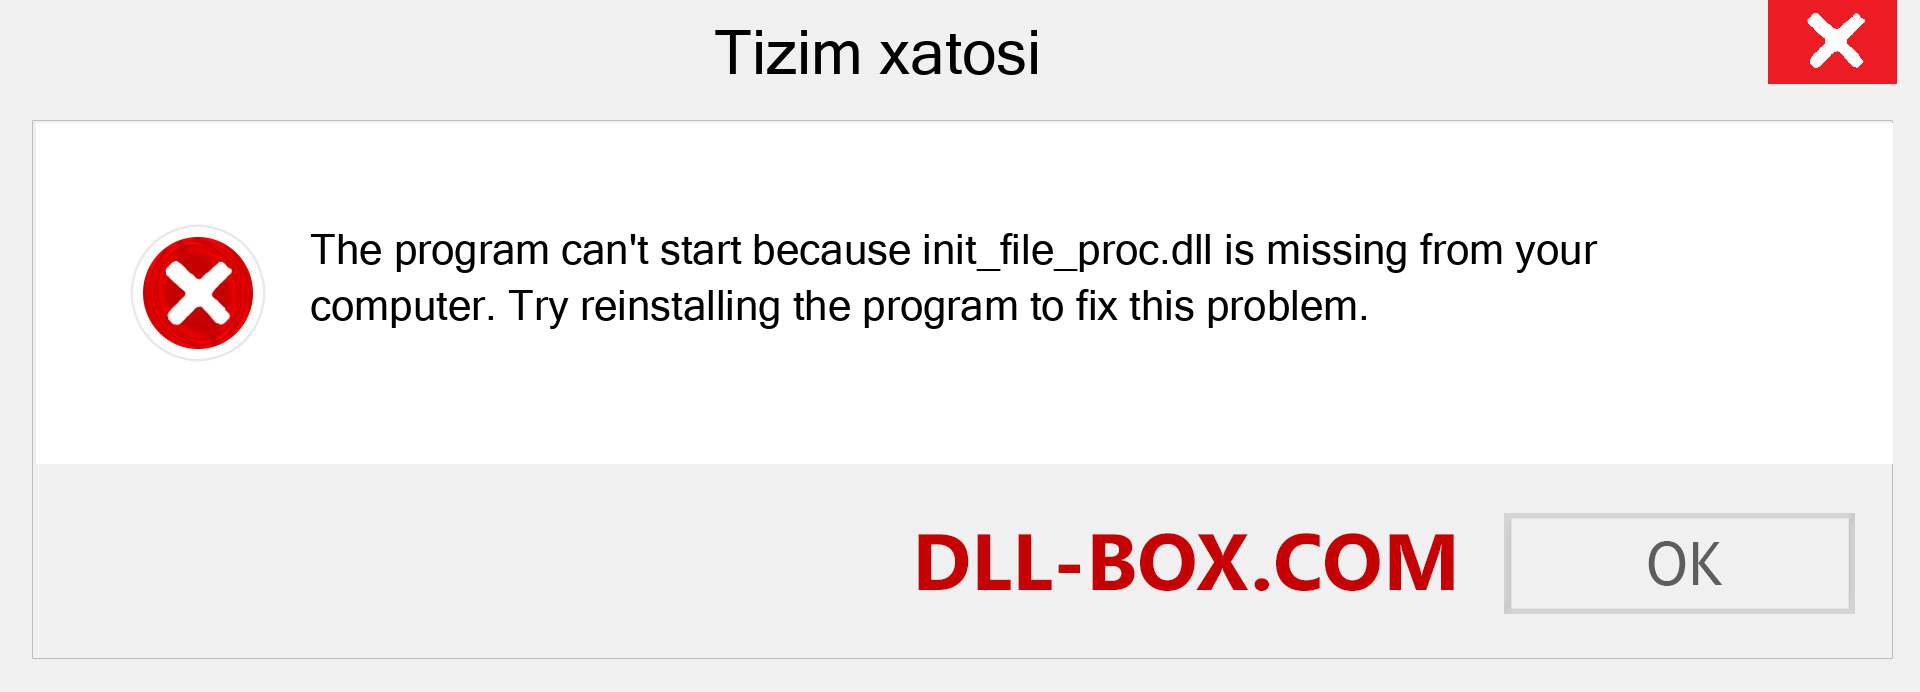 init_file_proc.dll fayli yo'qolganmi?. Windows 7, 8, 10 uchun yuklab olish - Windowsda init_file_proc dll etishmayotgan xatoni tuzating, rasmlar, rasmlar